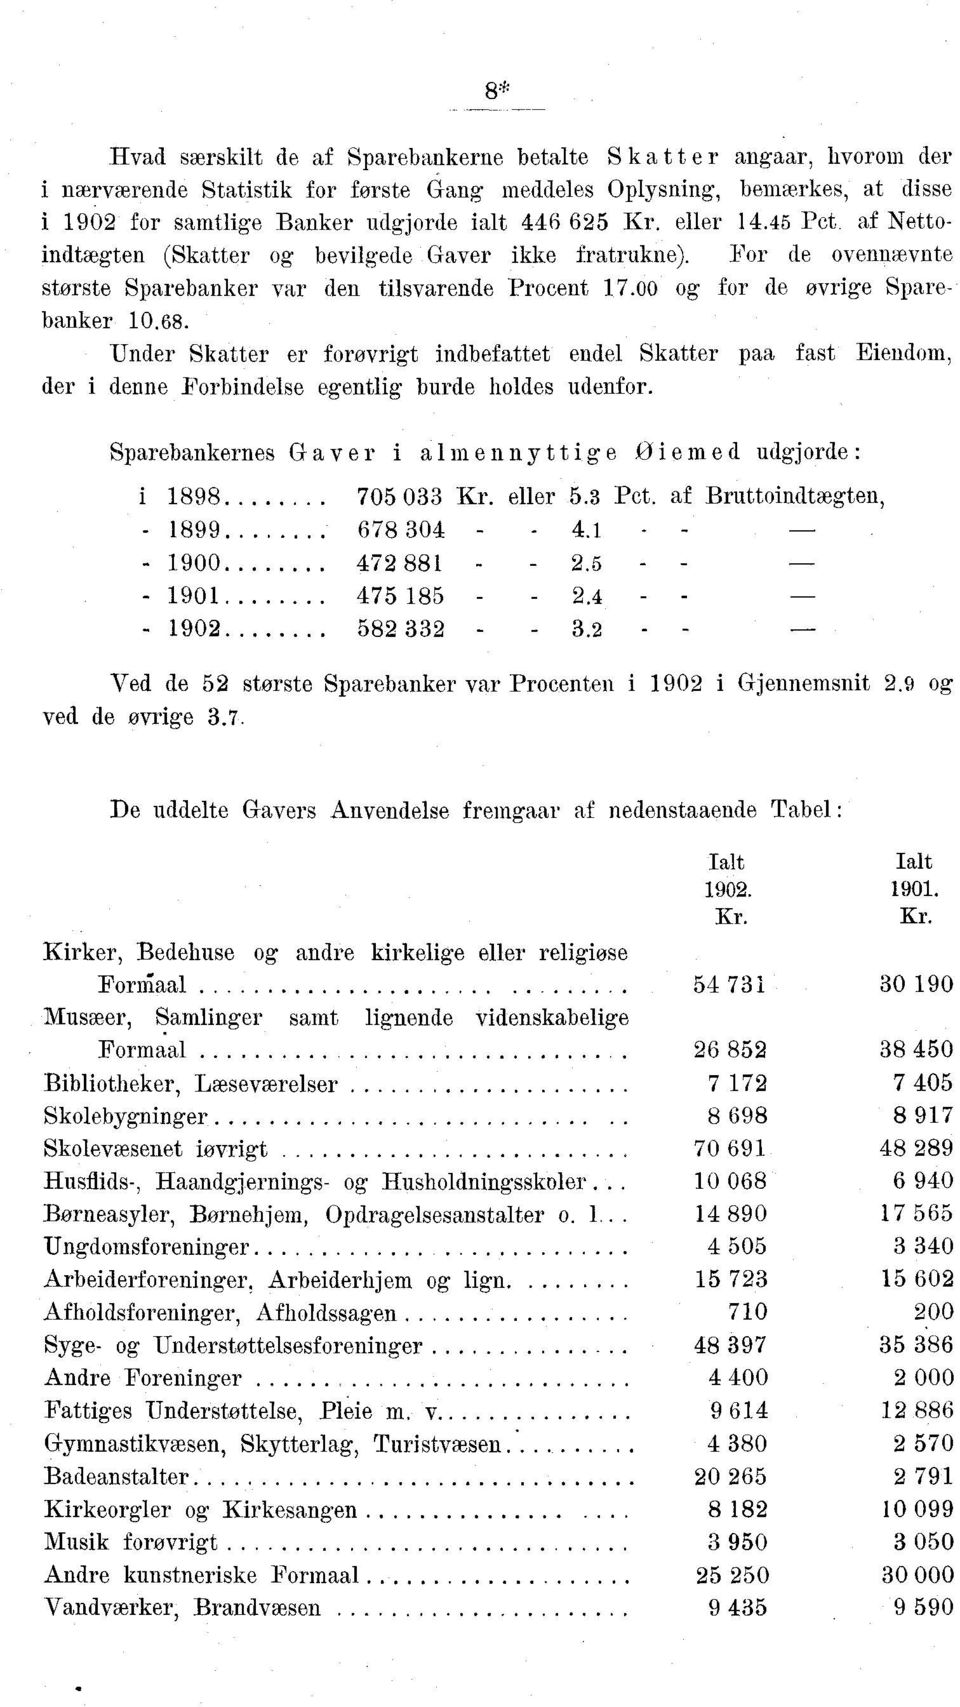 Under Skatter er forovrigt indbefattet endel Skatter paa fast Eiendom, der i denne Forbindelse egentlig burde holdes udenfor. Sparebankernes Gaver i almennyttige Øiemed udgjorde: i 1898 705 033 Kr.